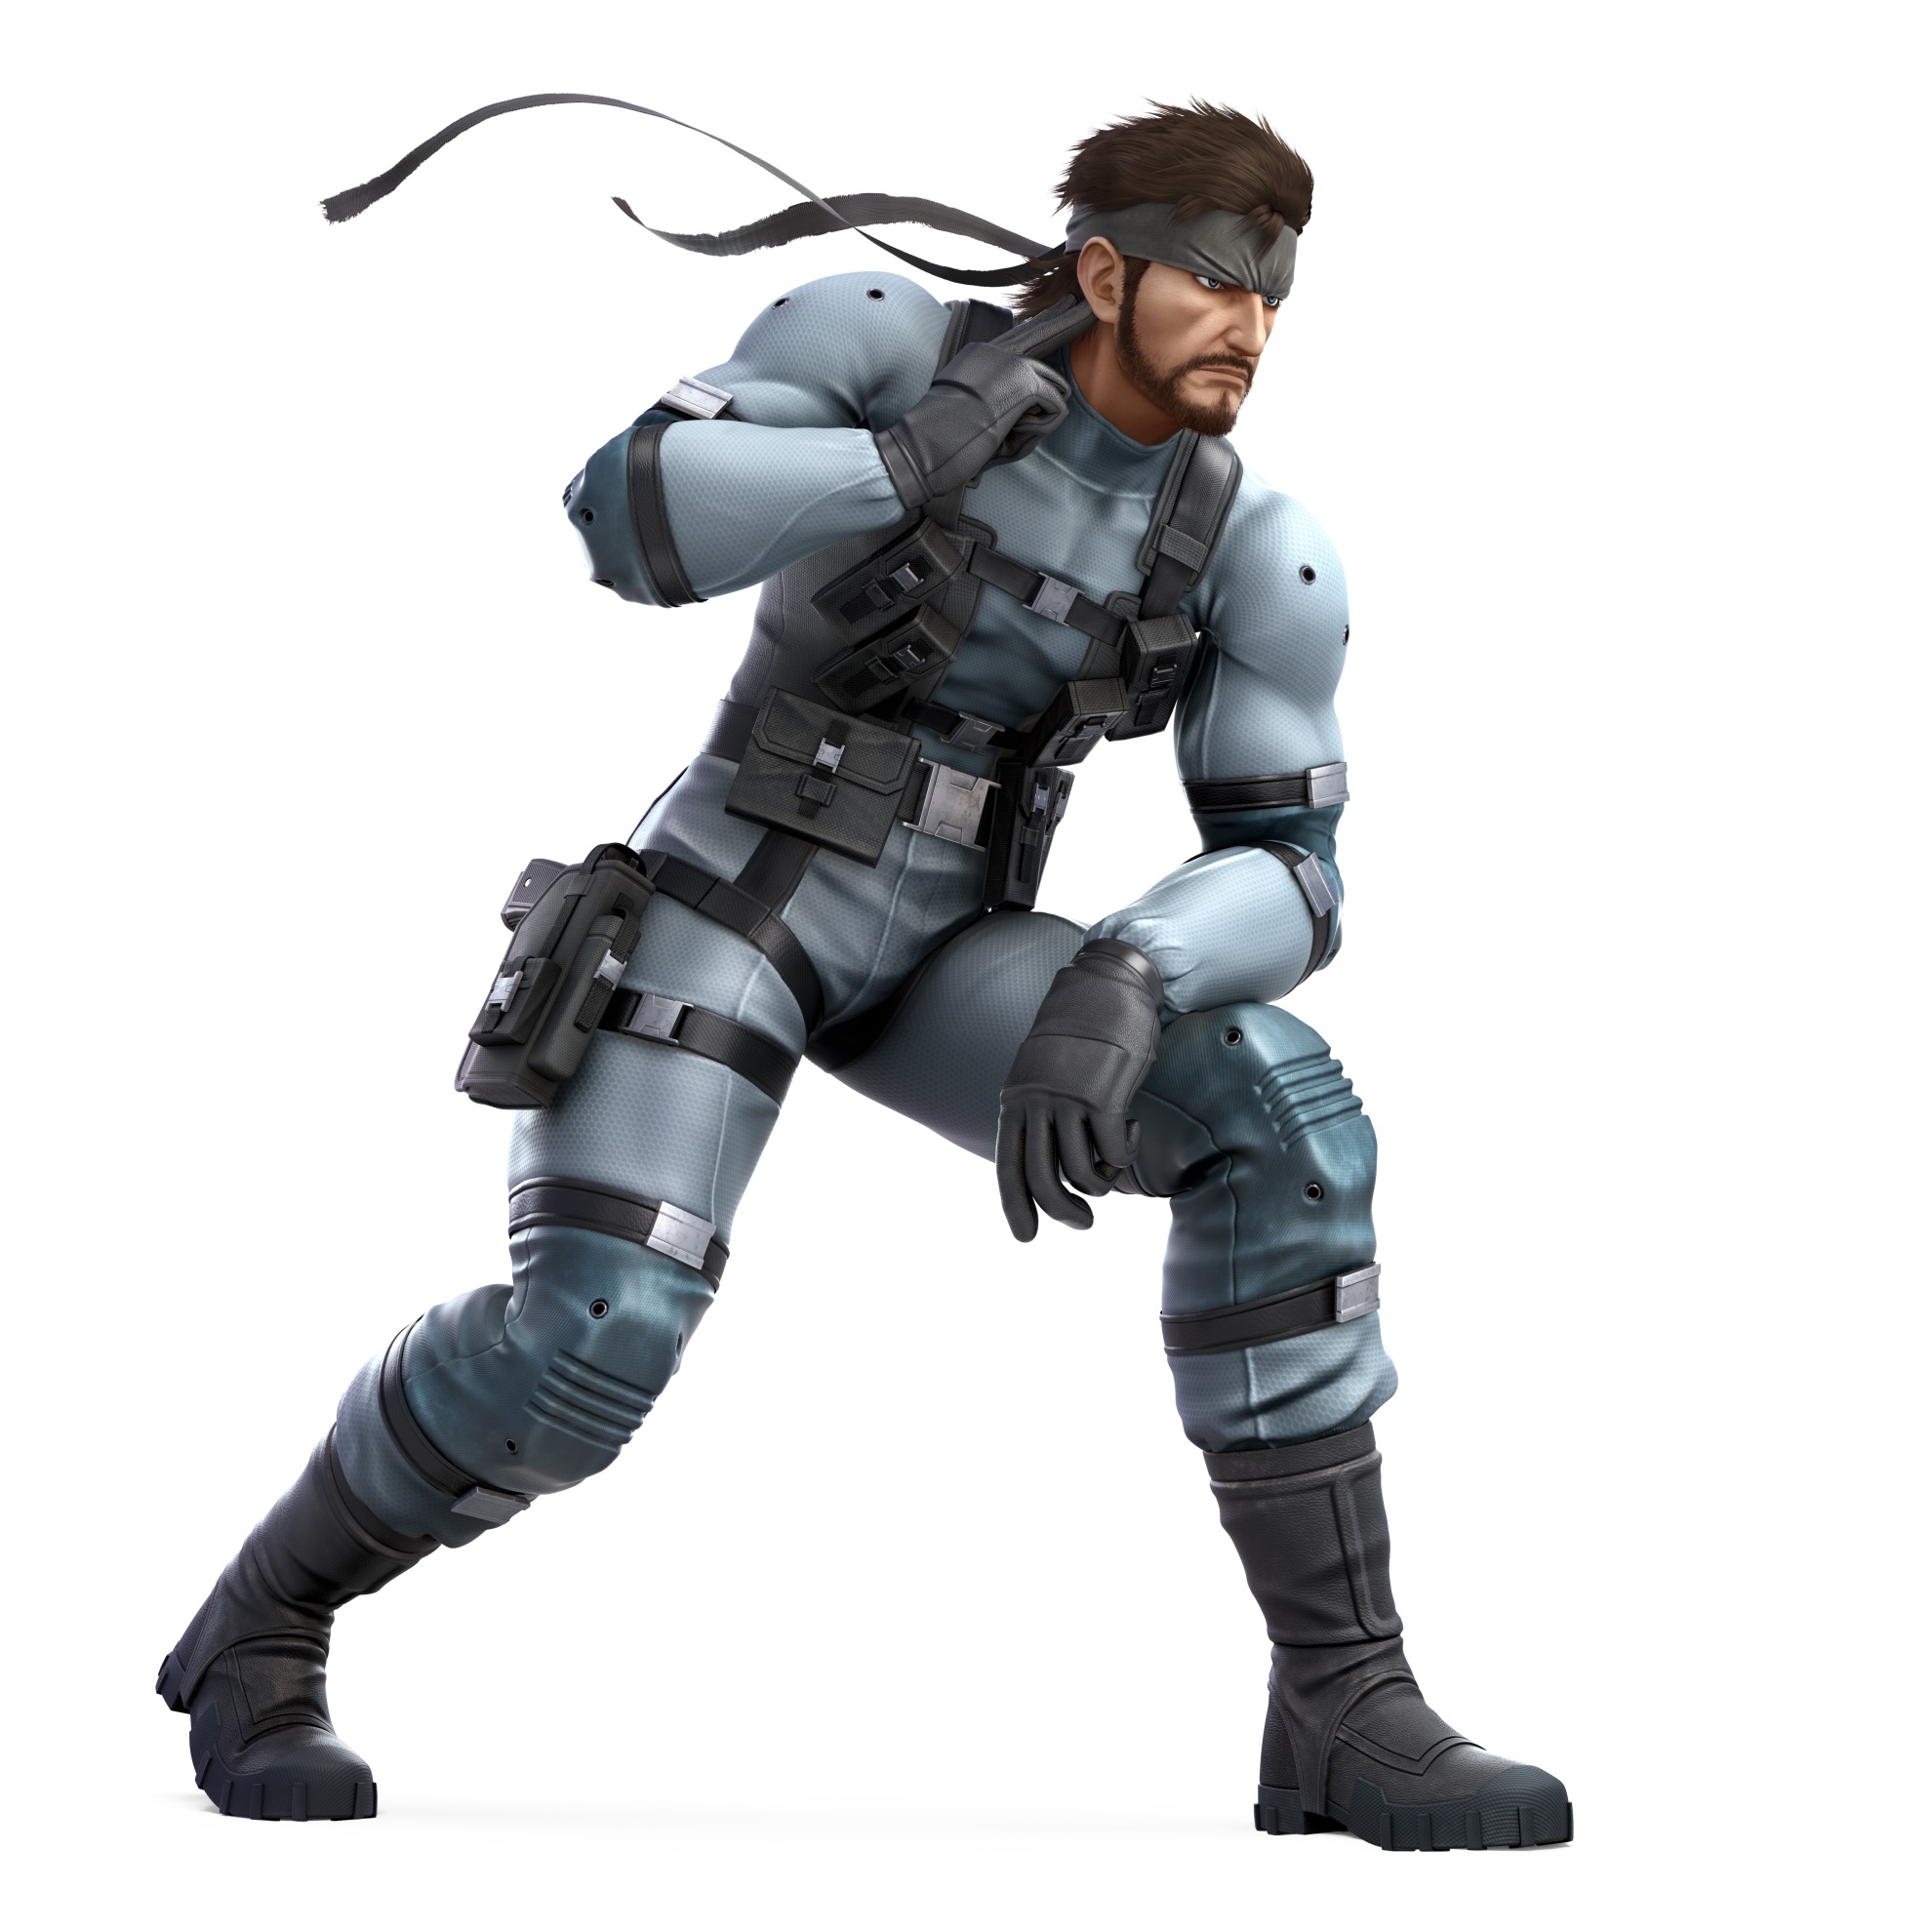 Snake Super Smash Bros. Ultimate Character Render